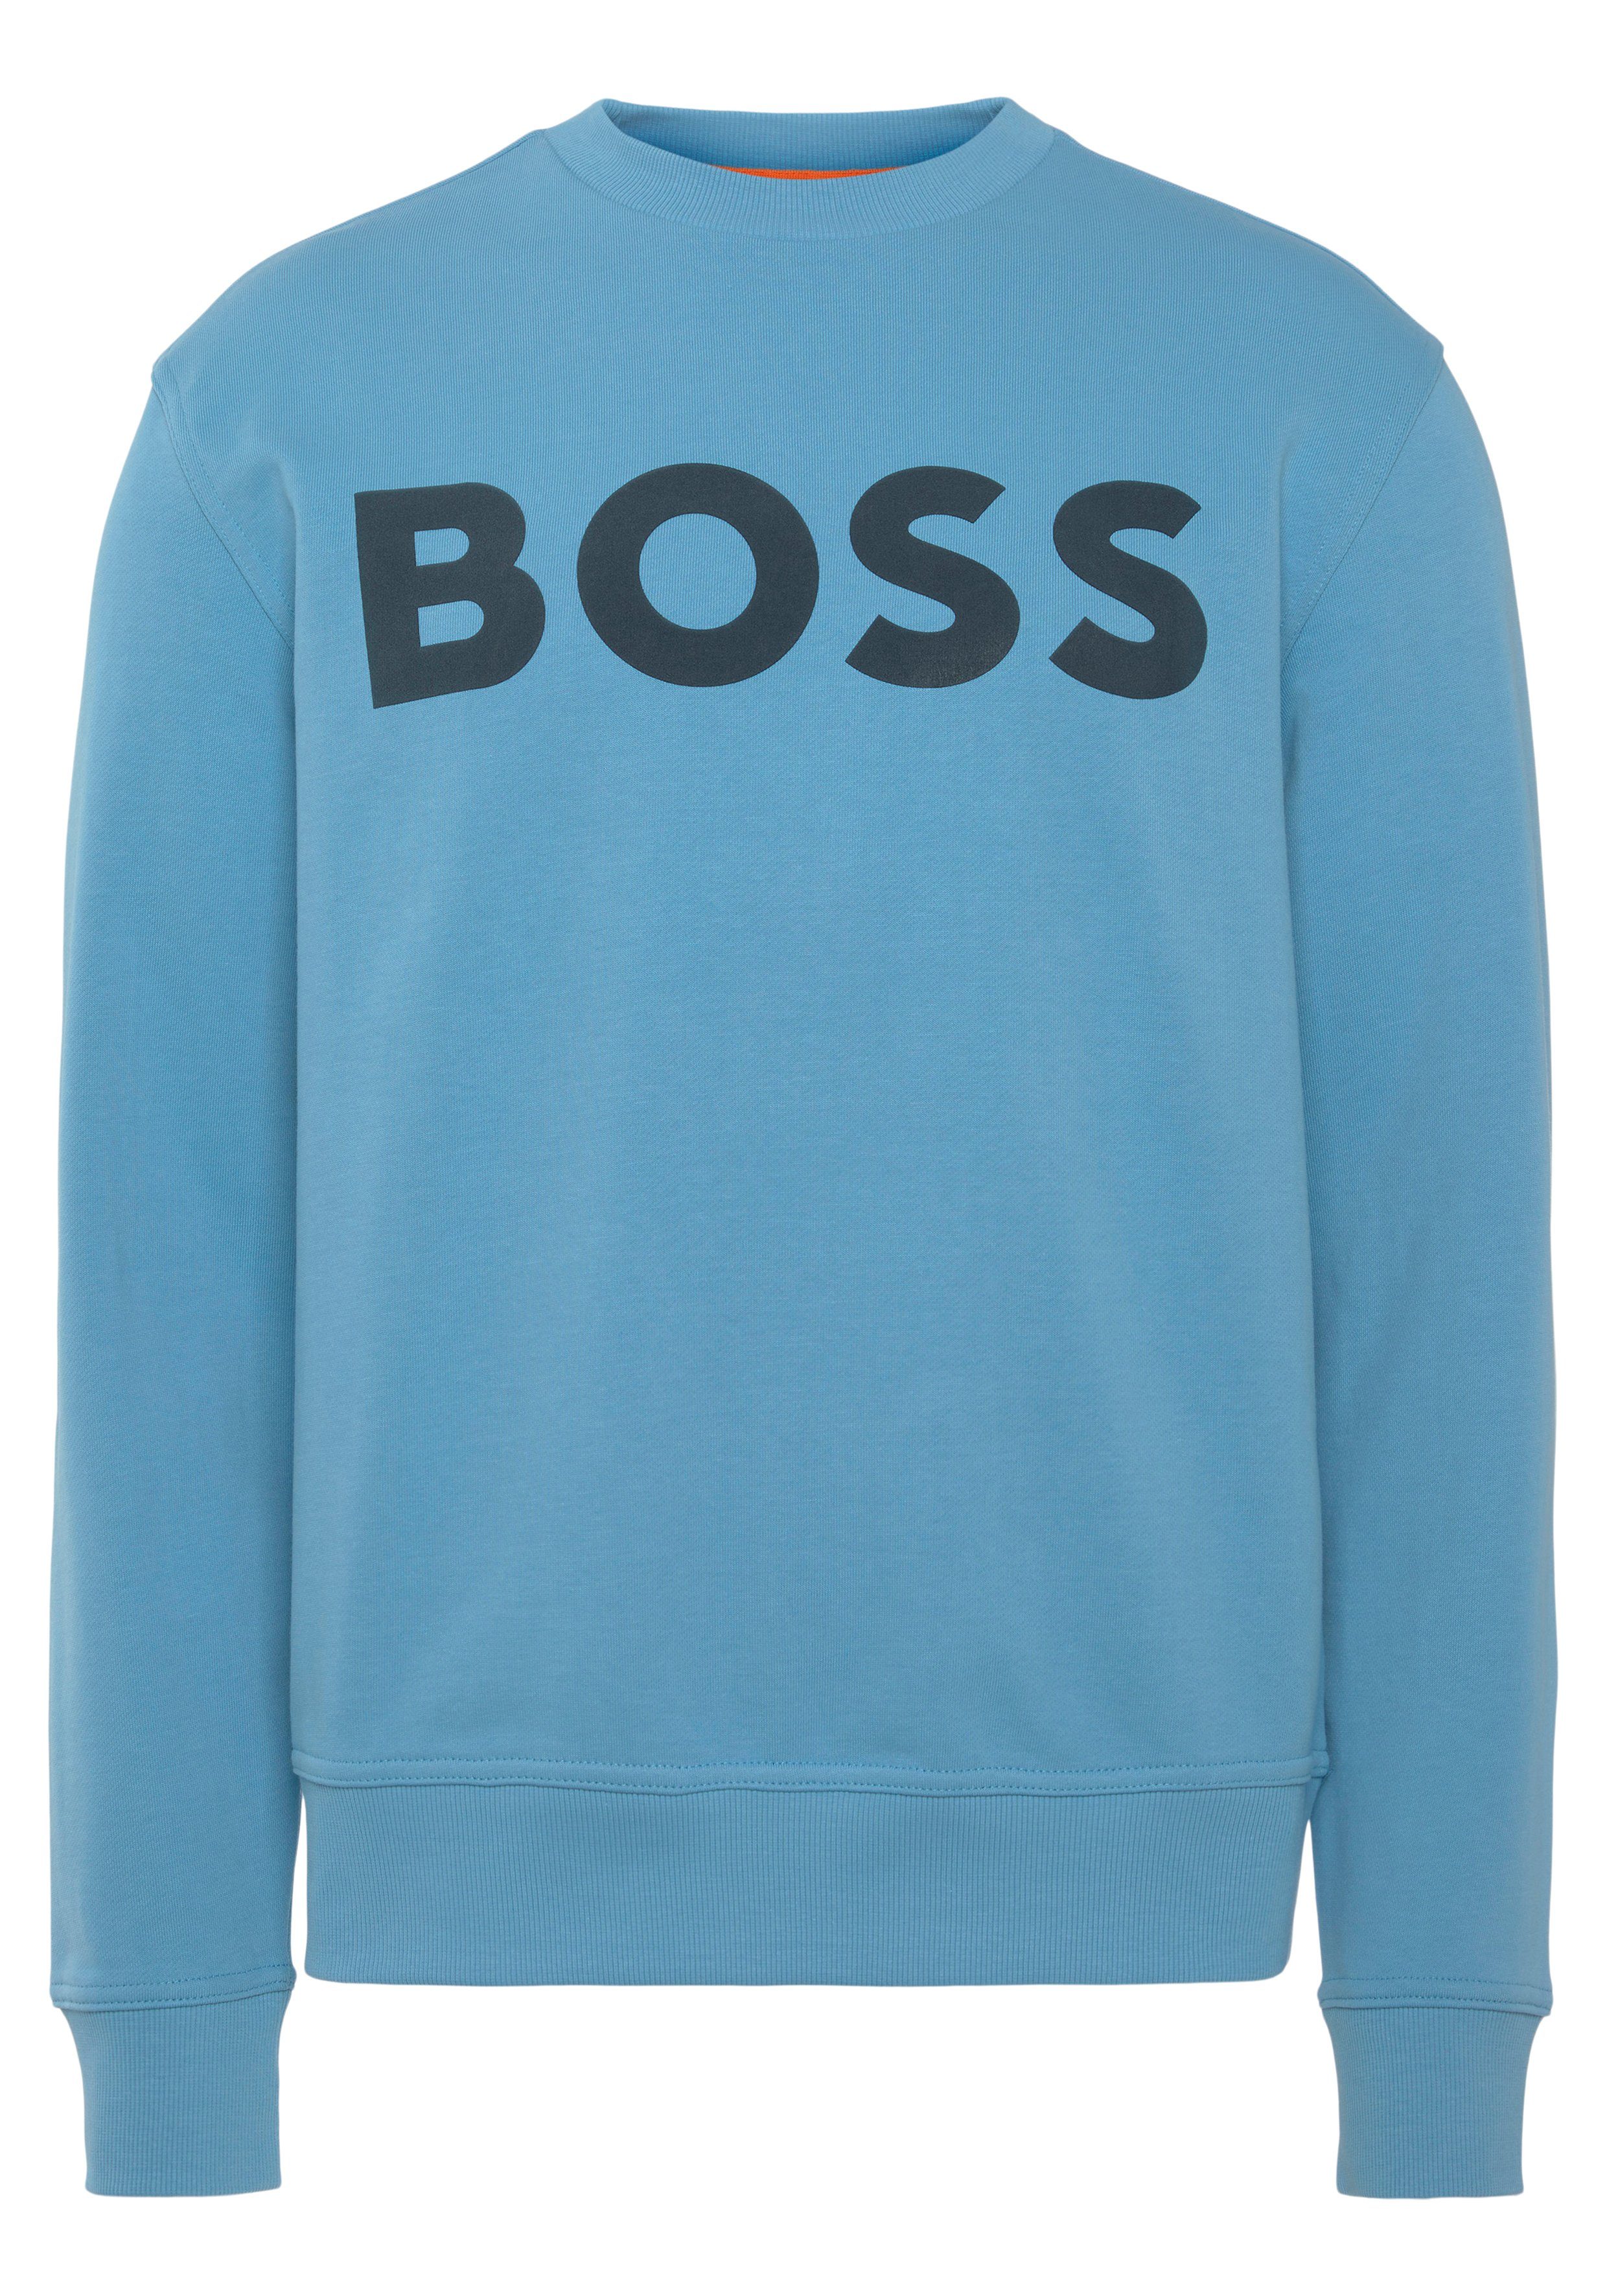 Open Blue mit ORANGE BOSS Print WeBasicCrew Sweatshirt